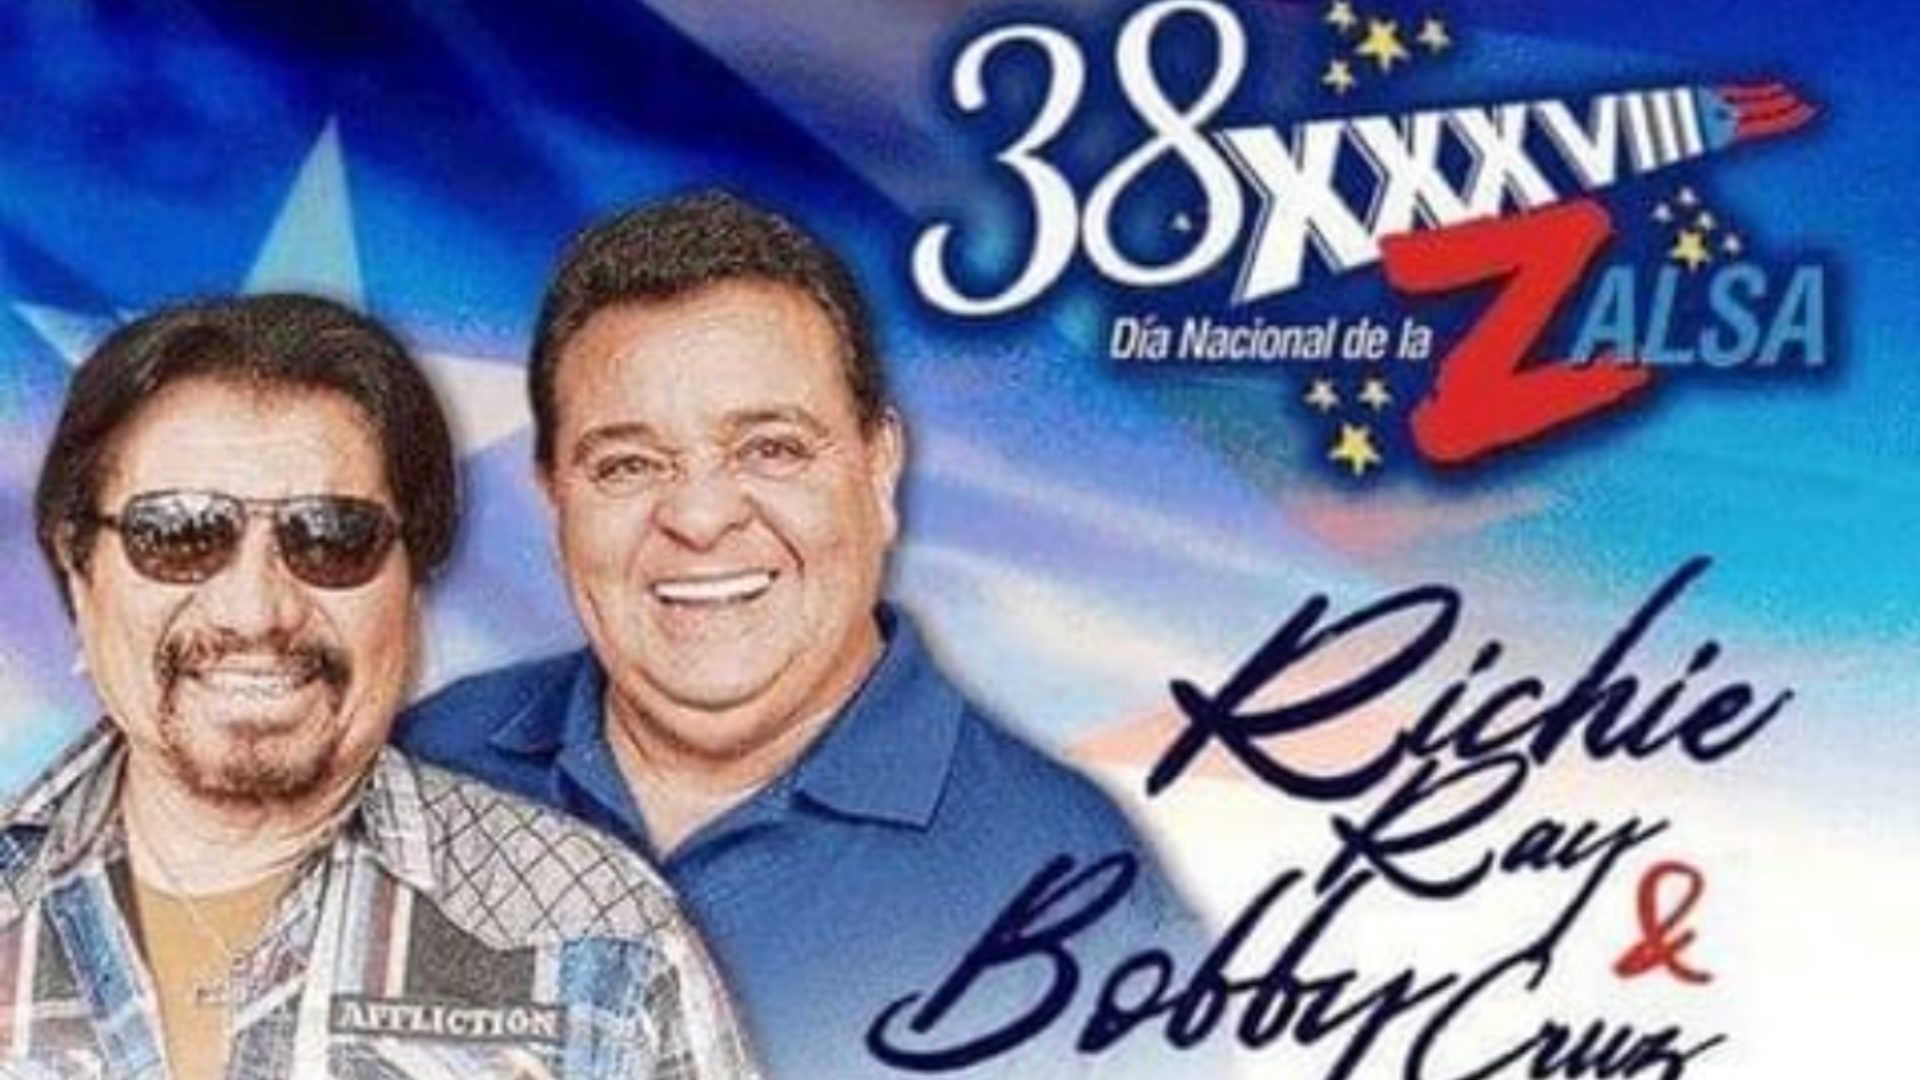 En el Día Nacional de la Salsa se reúnen Bobby Cruz y Richie Ray + 10